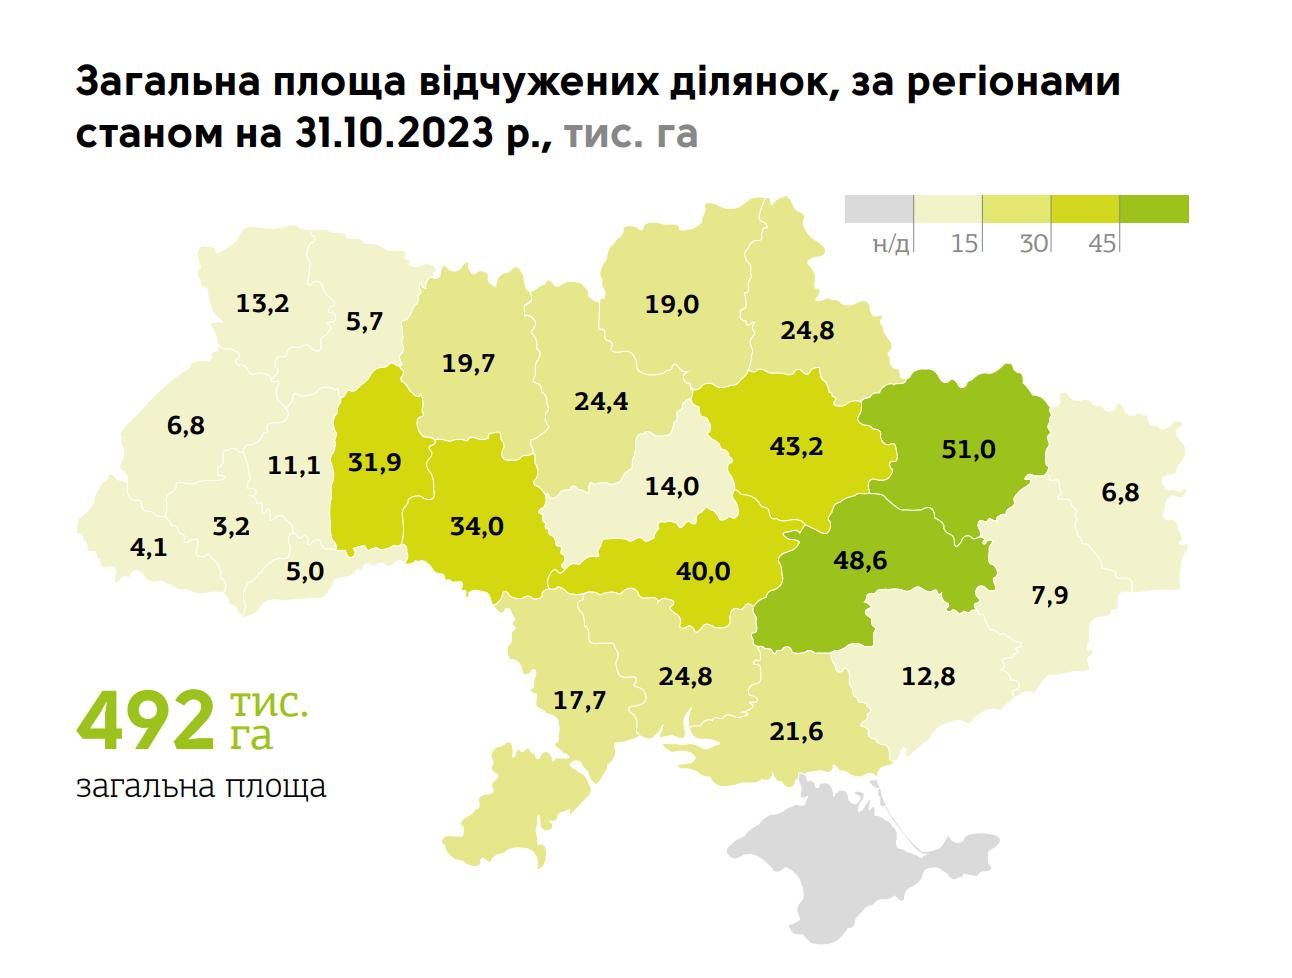 Карта України та площа відчужених земель у 2022-2023 роках